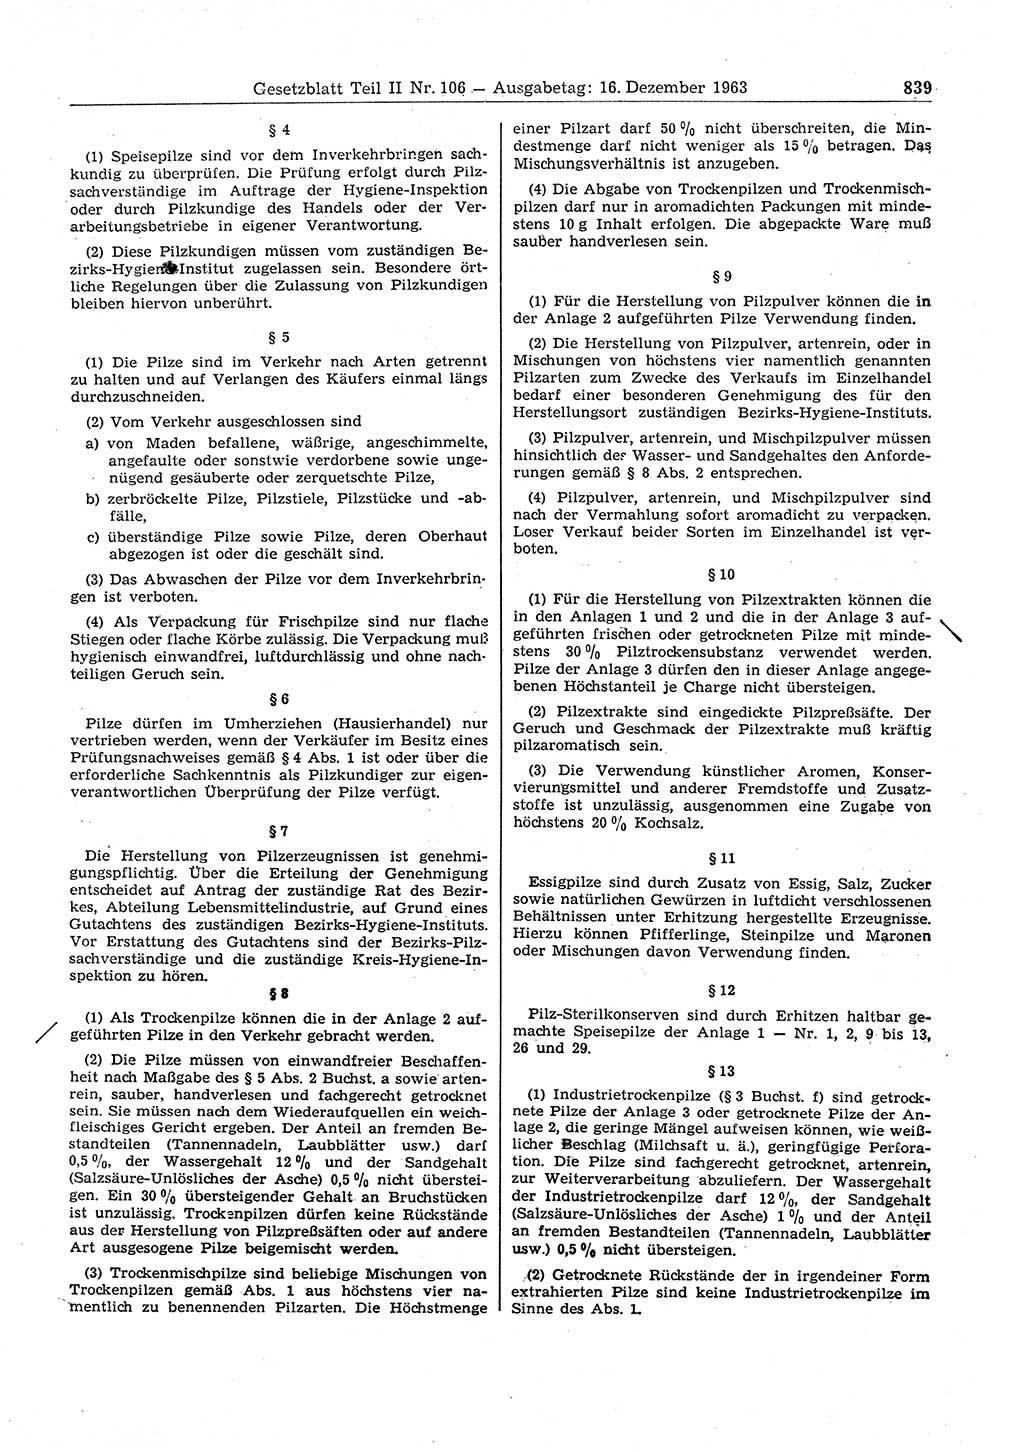 Gesetzblatt (GBl.) der Deutschen Demokratischen Republik (DDR) Teil ⅠⅠ 1963, Seite 839 (GBl. DDR ⅠⅠ 1963, S. 839)